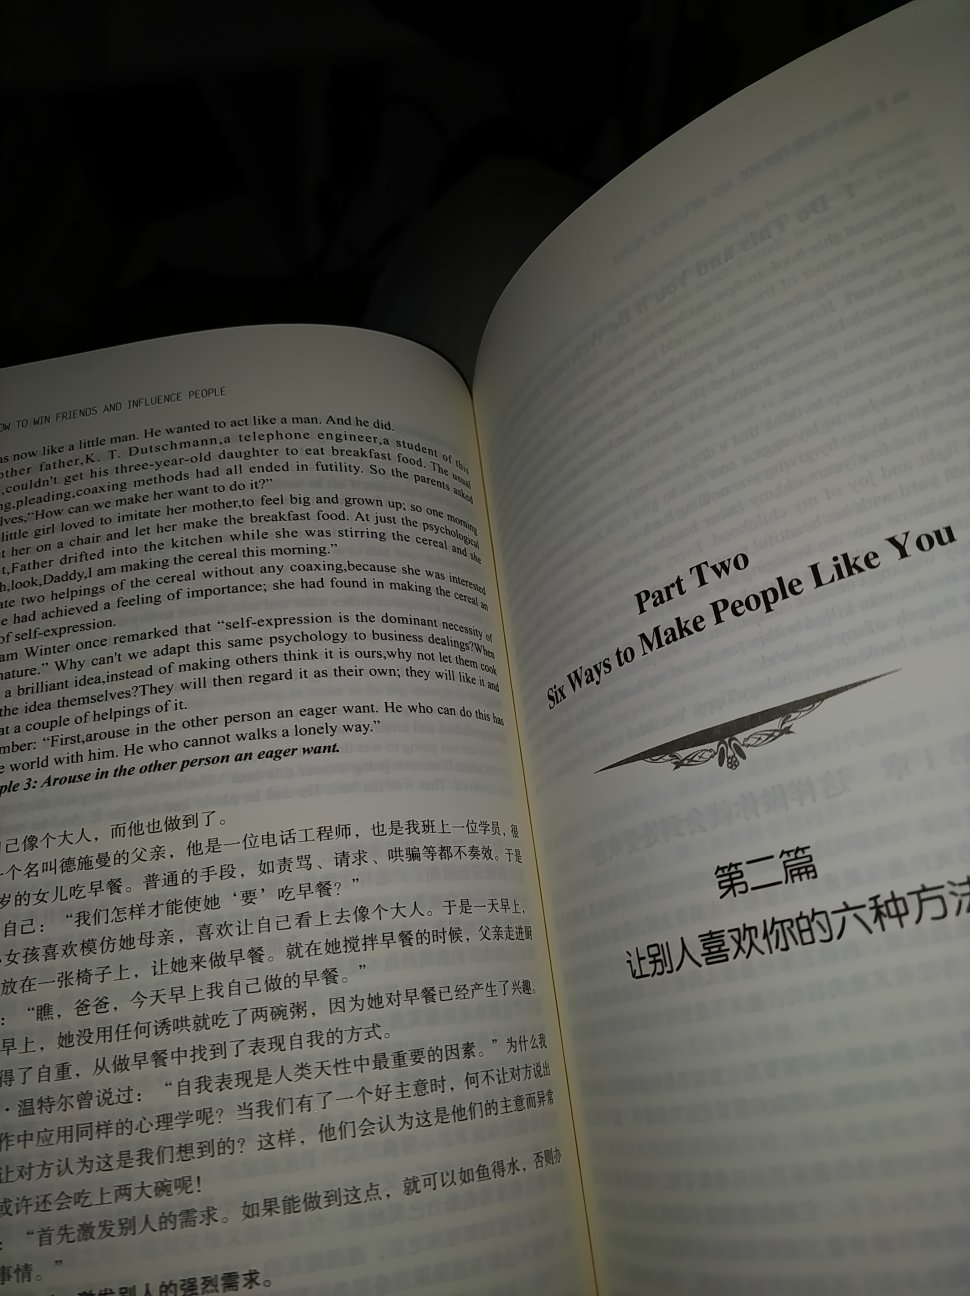 以为书很厚呢，其实很薄。有很多出版社的这本书，英文汉语都有，就买的它。